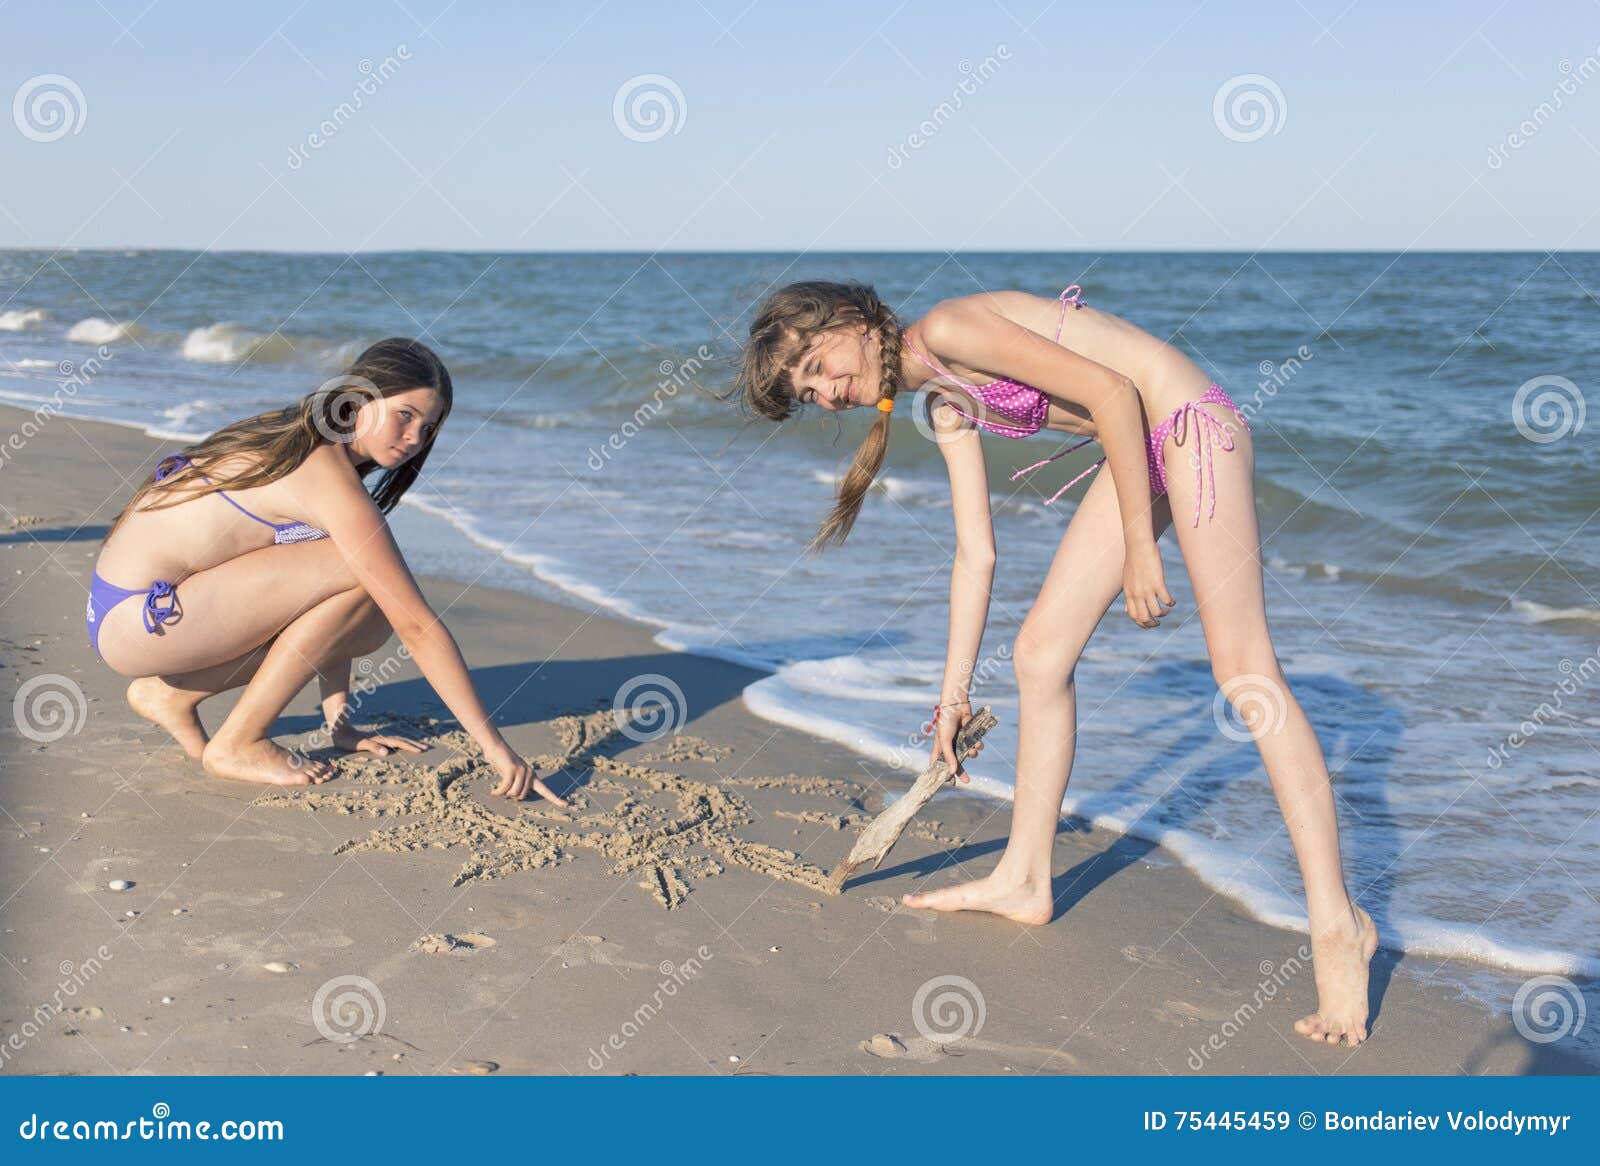 фото детей на голом пляже фото 78